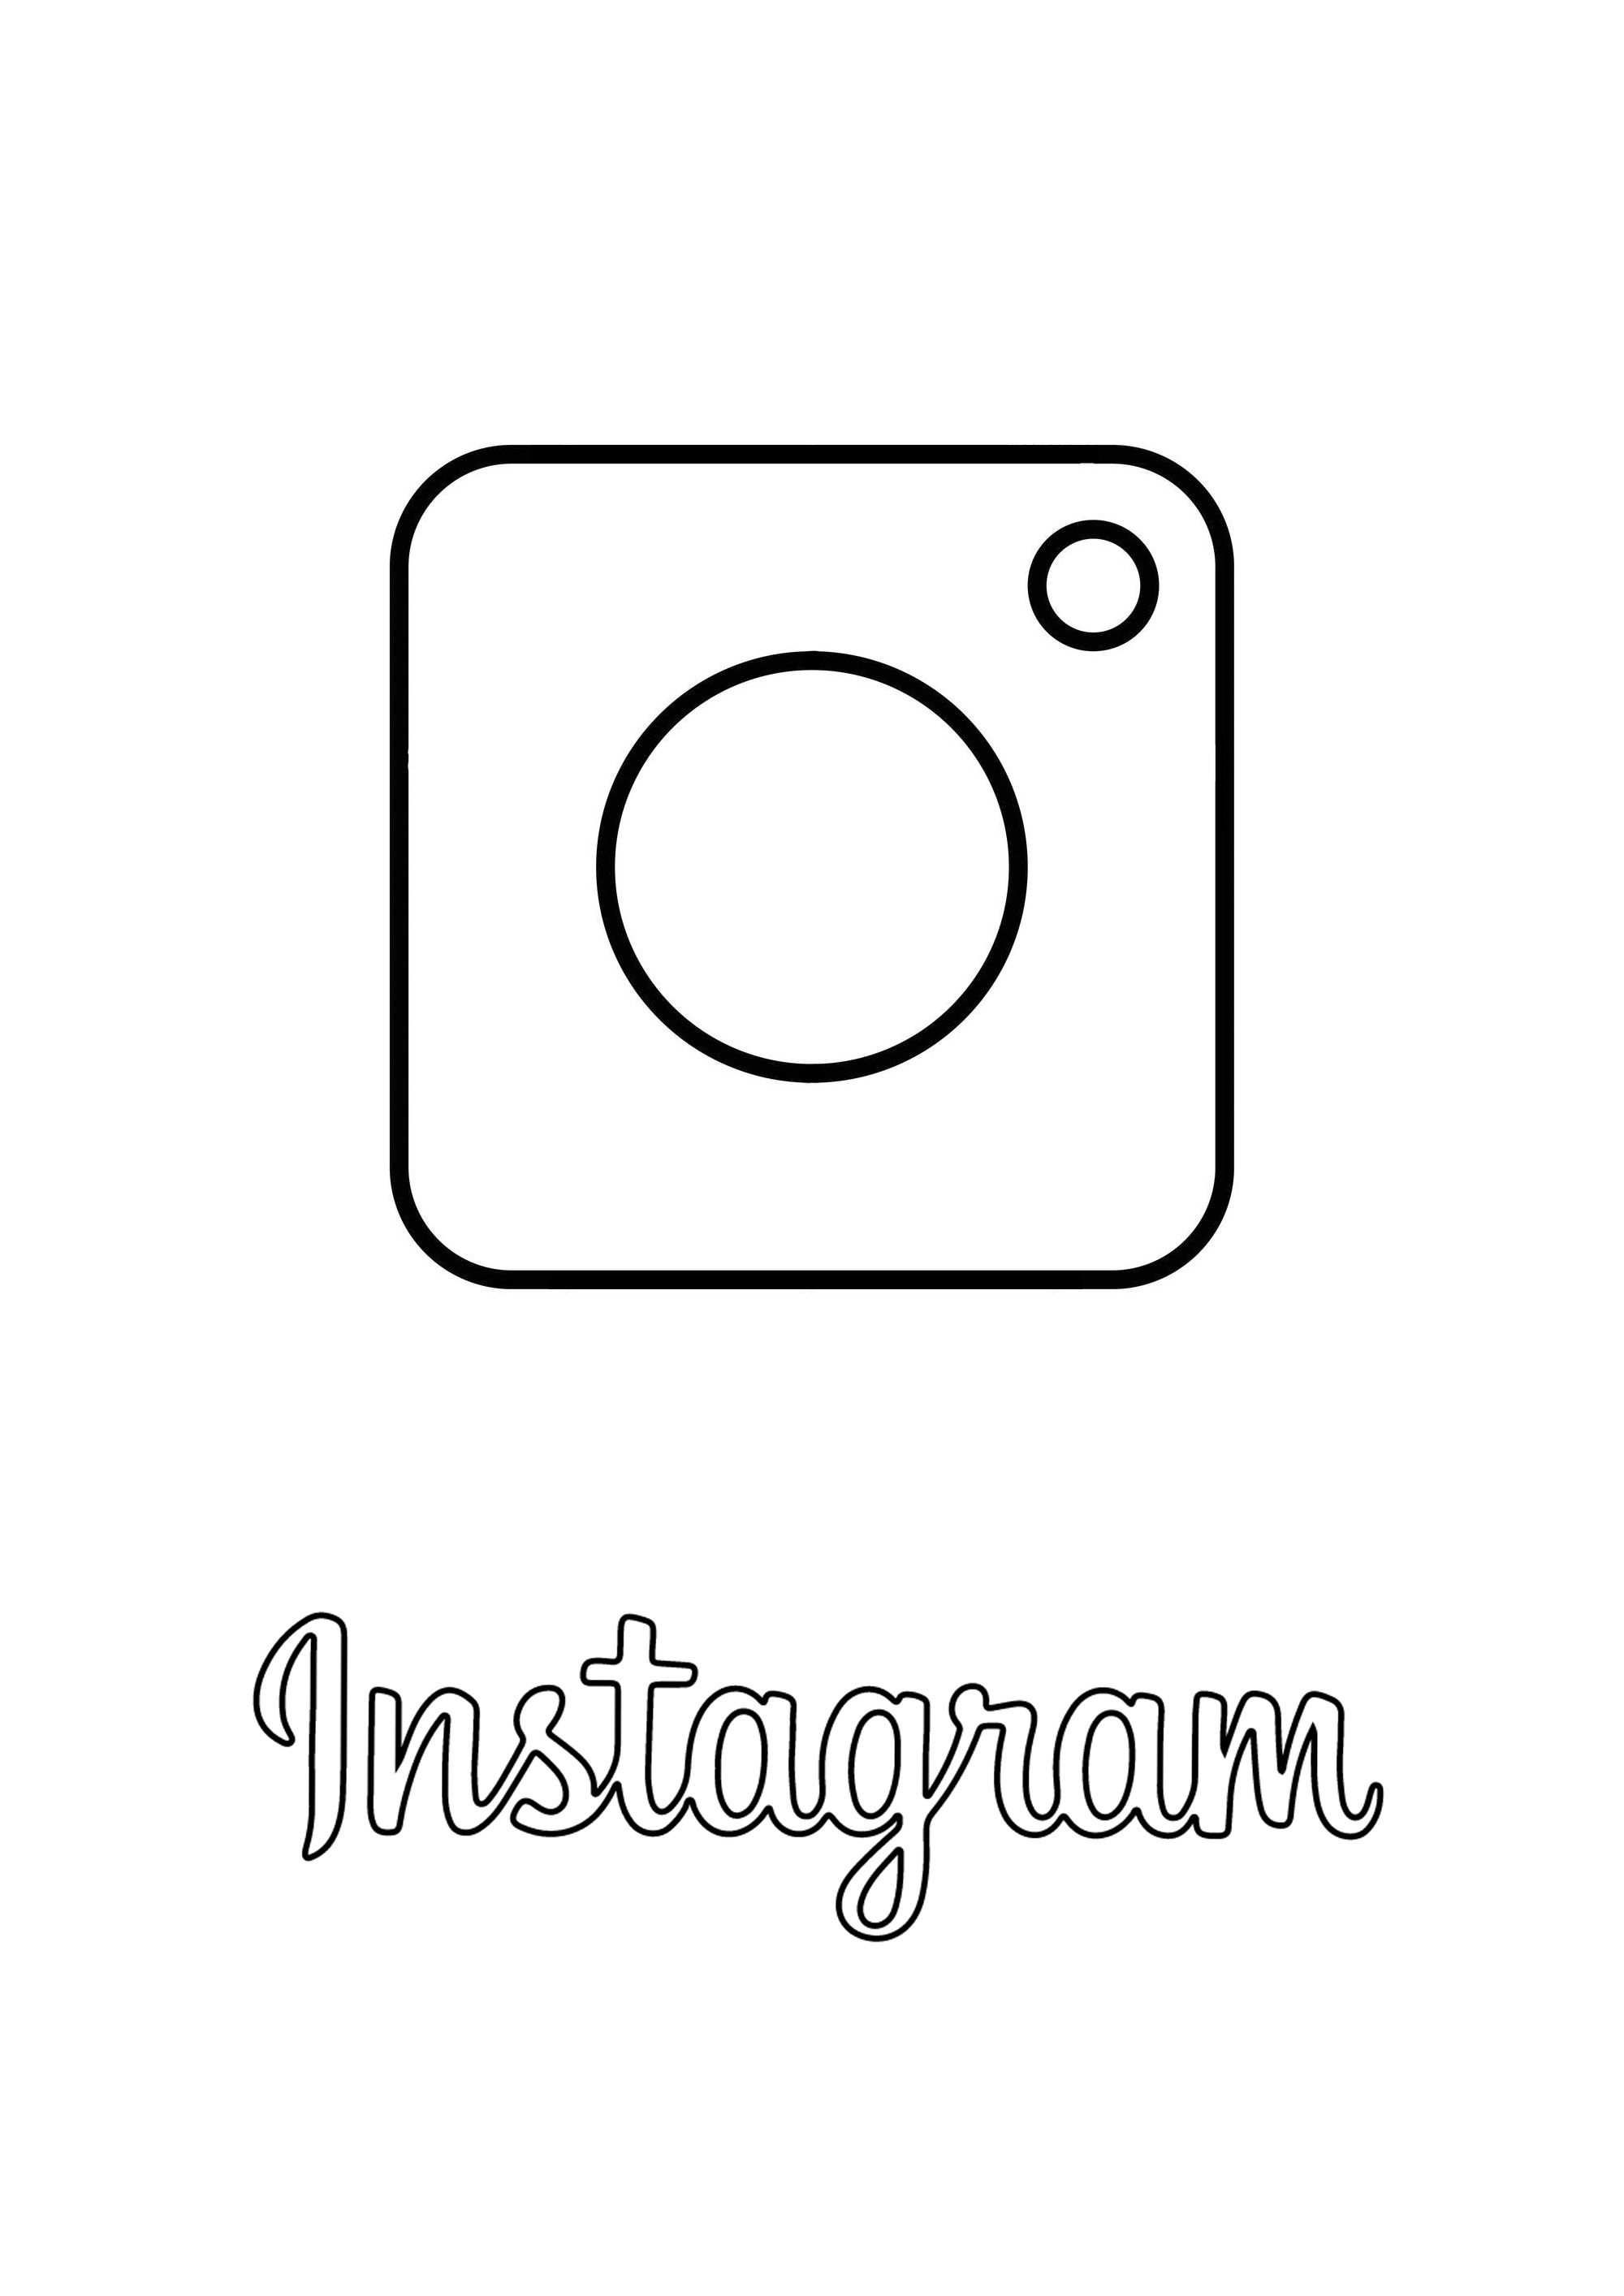 Logotipo Instagram para colorir em. Instagram é uma aplicação de partilha de fotos e vídeos, rede social e serviço fundada e lançada em Outubro de 2010 pelo americano Kevin Systrom e pelo brasileiro Michel Mike Krieger